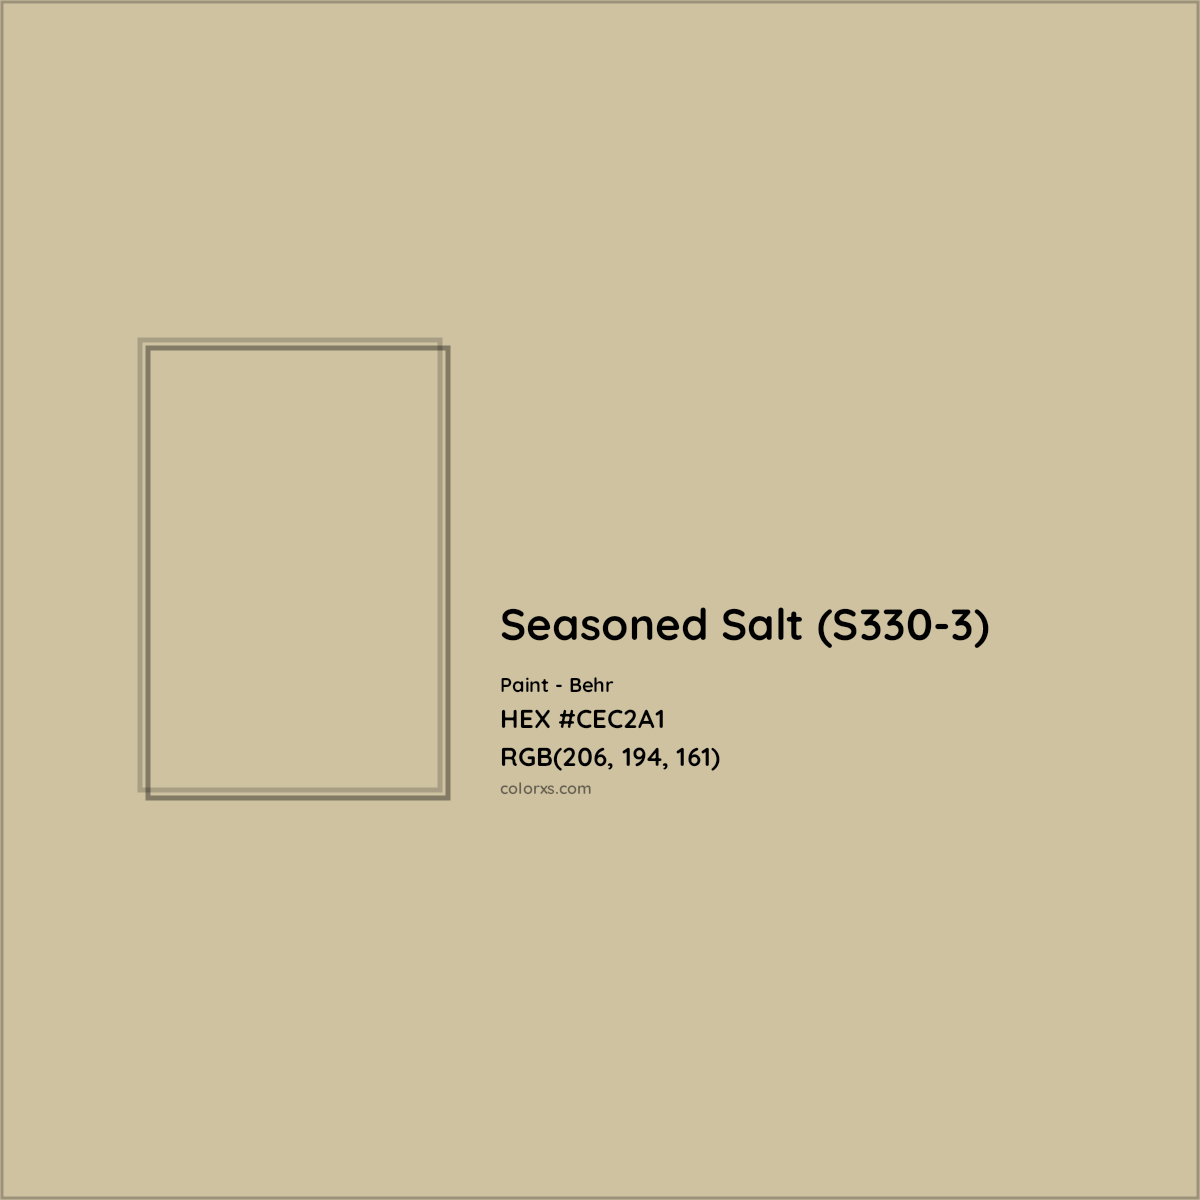 HEX #CEC2A1 Seasoned Salt (S330-3) Paint Behr - Color Code